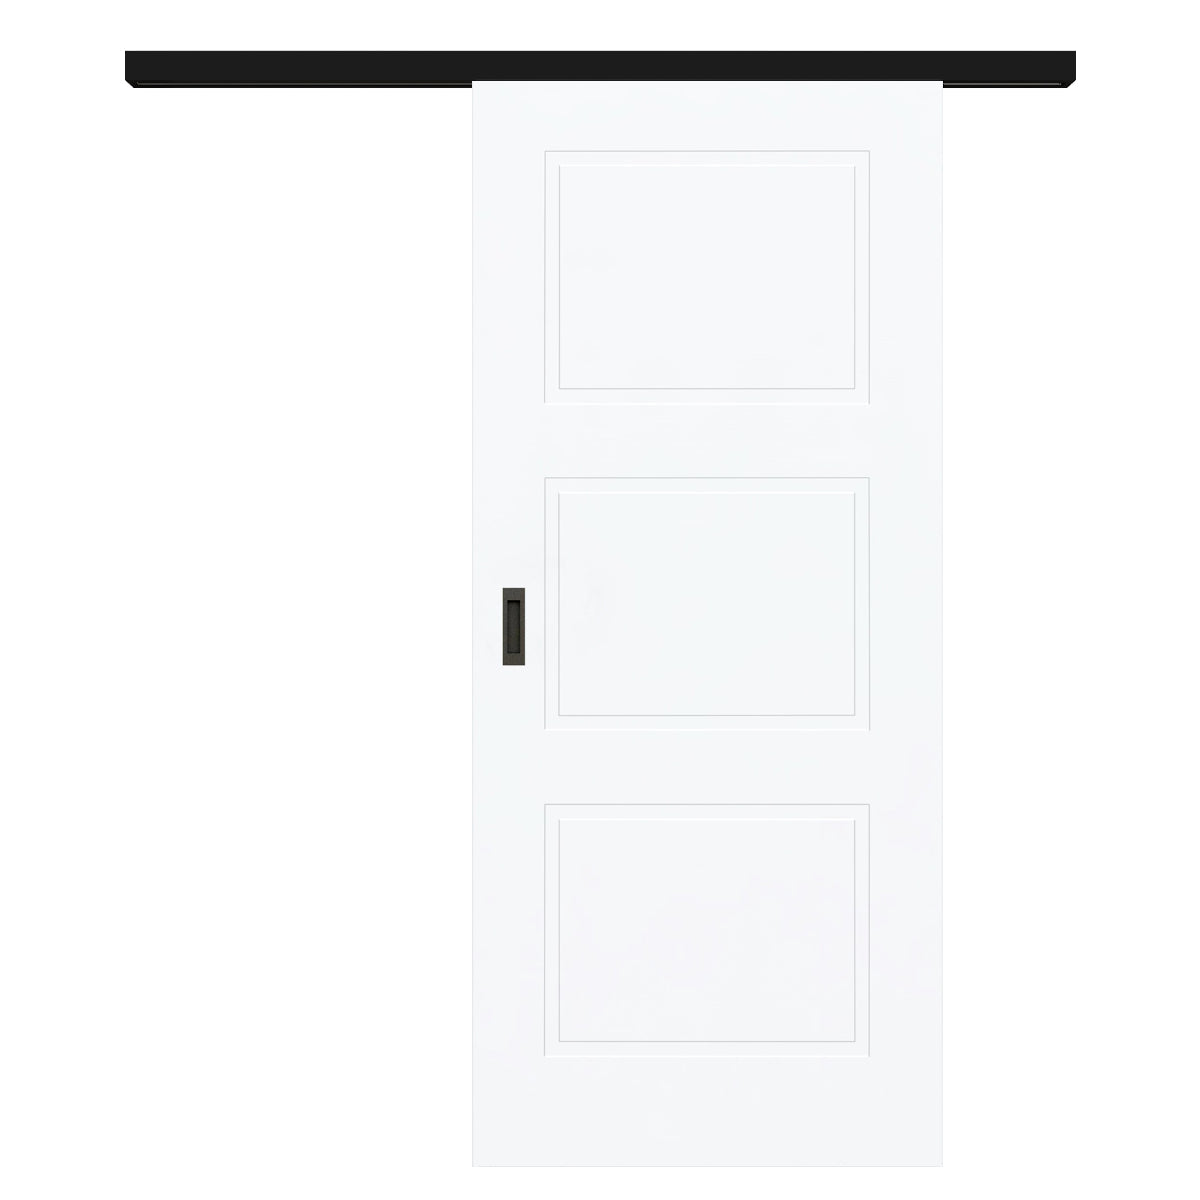 Schiebetür für Set mit schwarzem Laufkasten brillant-weiß Stiltür mit 3 Kassetten - Modell Stiltür M33